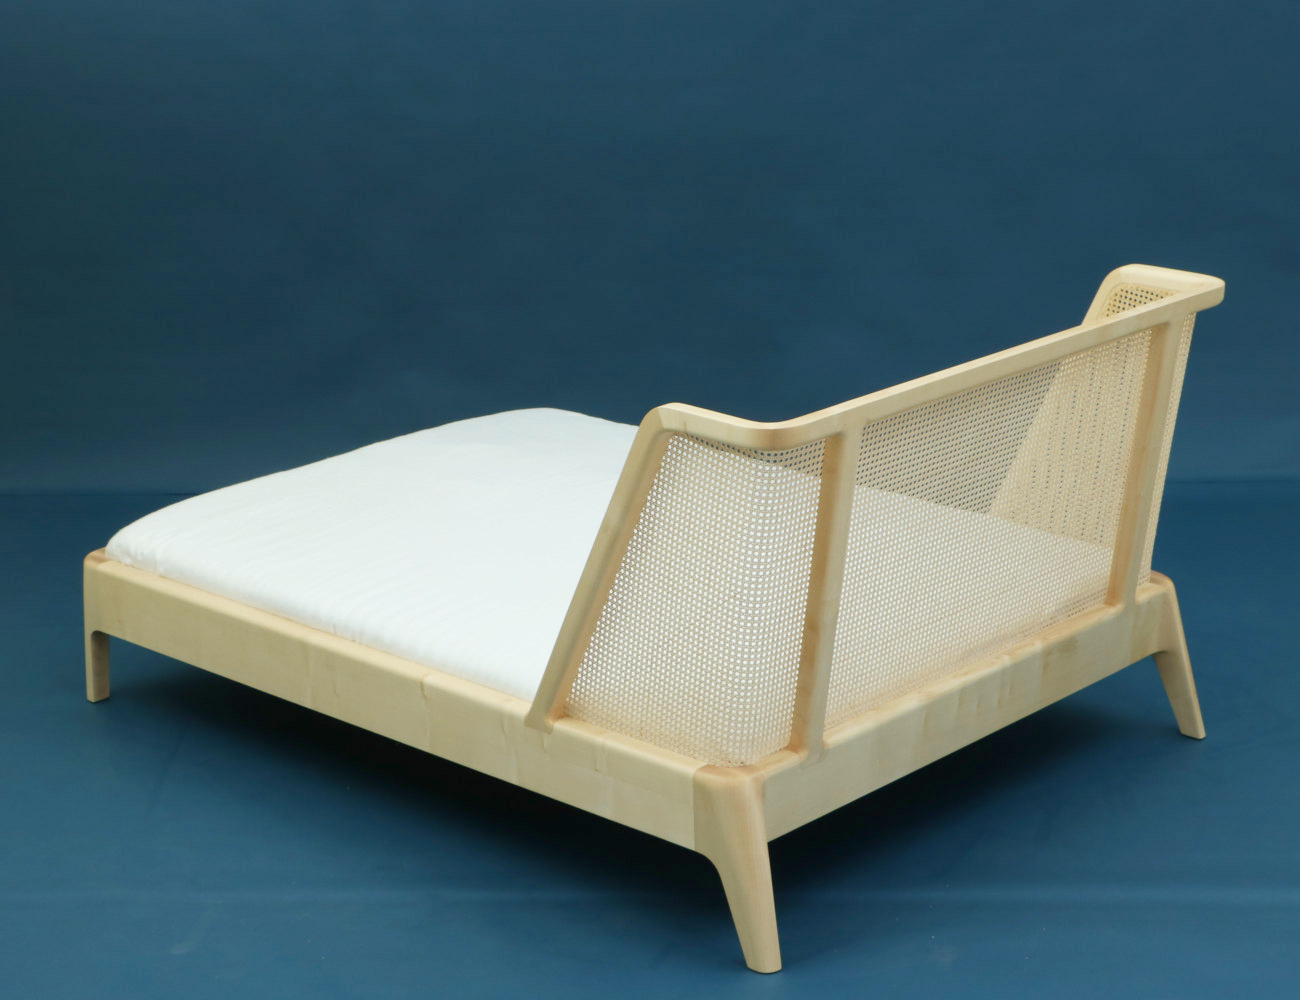 Bett aus Holz und Rattan - gefertigt bei Berlin